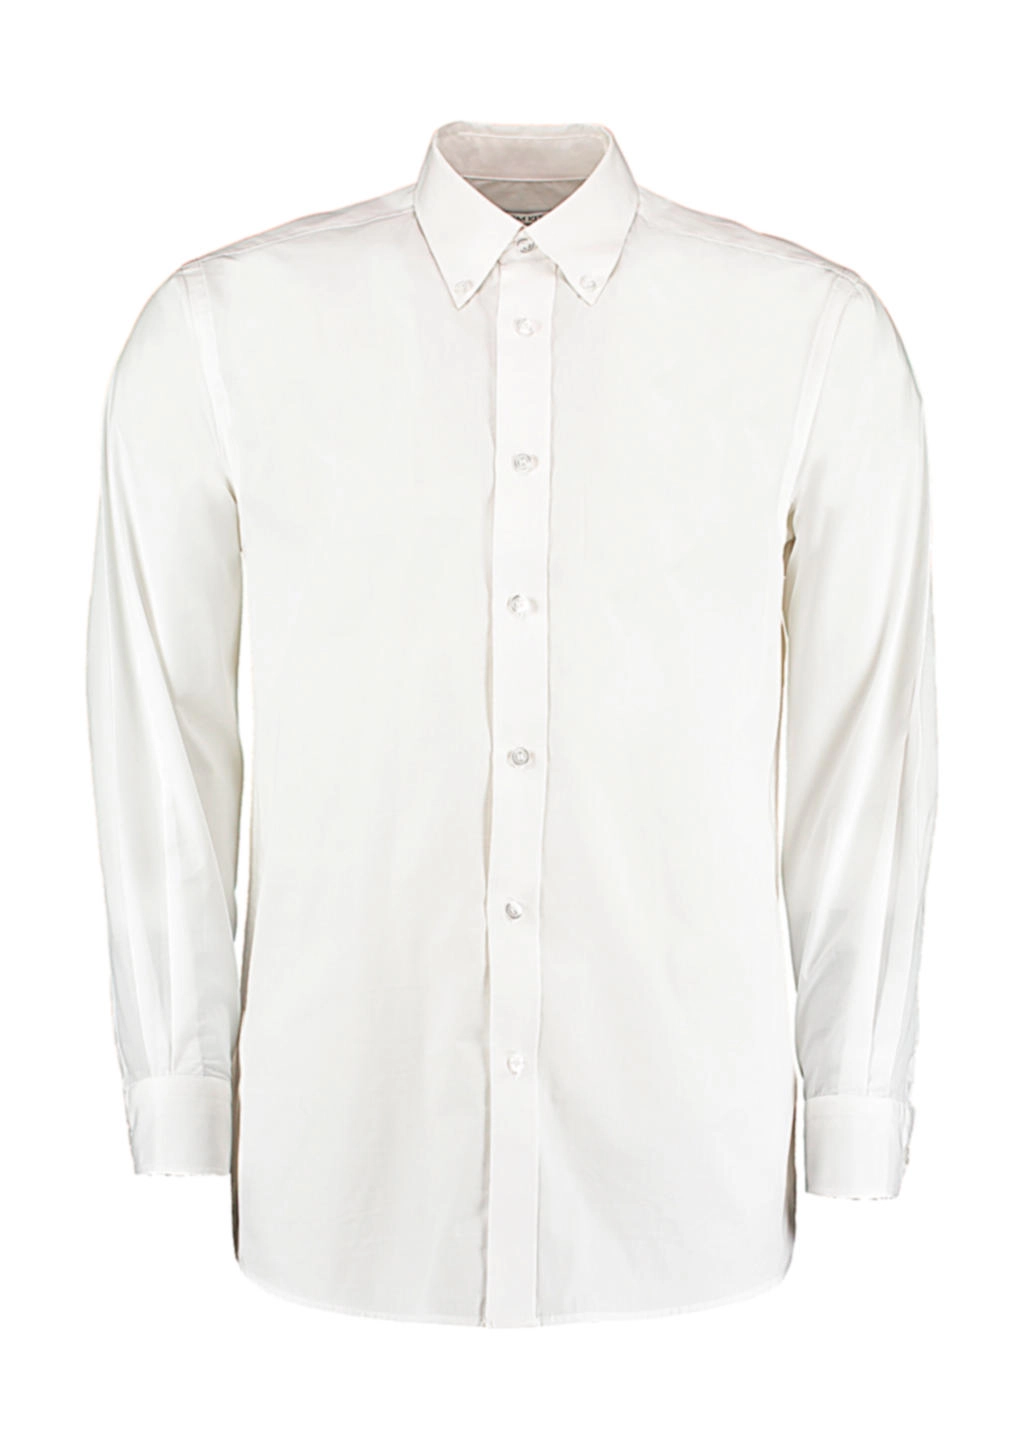 Tailored Fit Business Shirt zum Besticken und Bedrucken in der Farbe White mit Ihren Logo, Schriftzug oder Motiv.